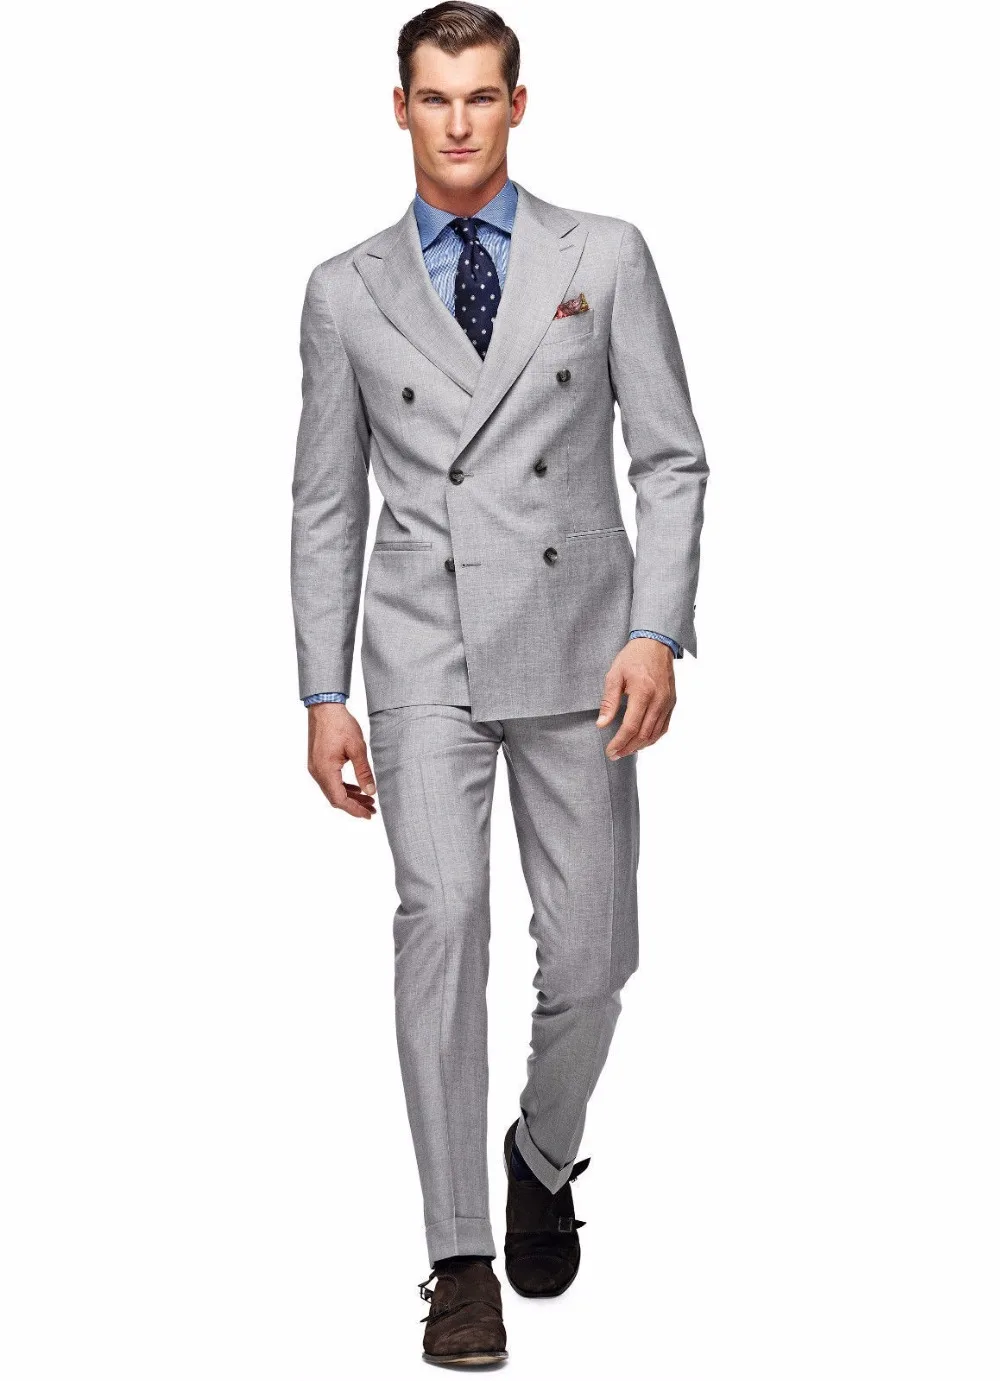 Folobe светло-серый индивидуальный заказ Для мужчин Костюмы двубортный формальный жених Смокинги для женихов куртка + Брюки для девочек